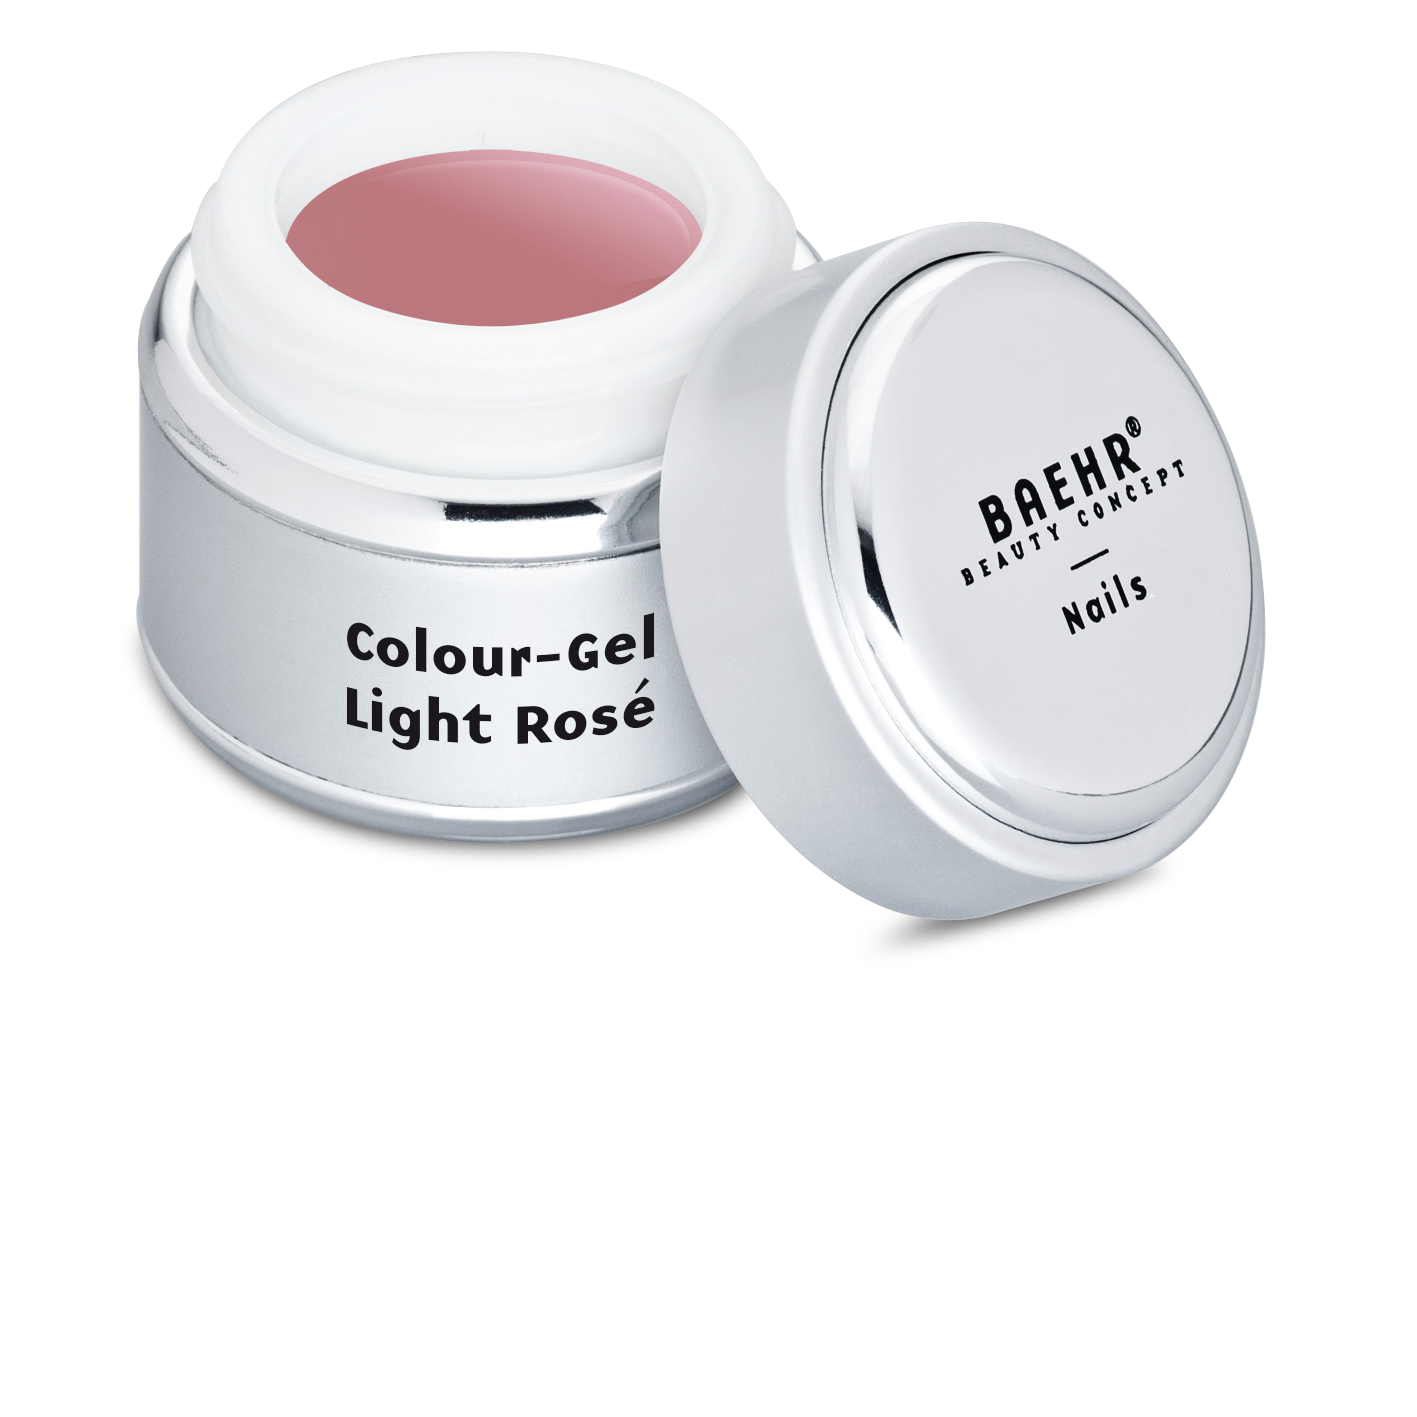 BAEHR BEAUTY CONCEPT - NAILS Colour-Gel Light Rosé 5 ml